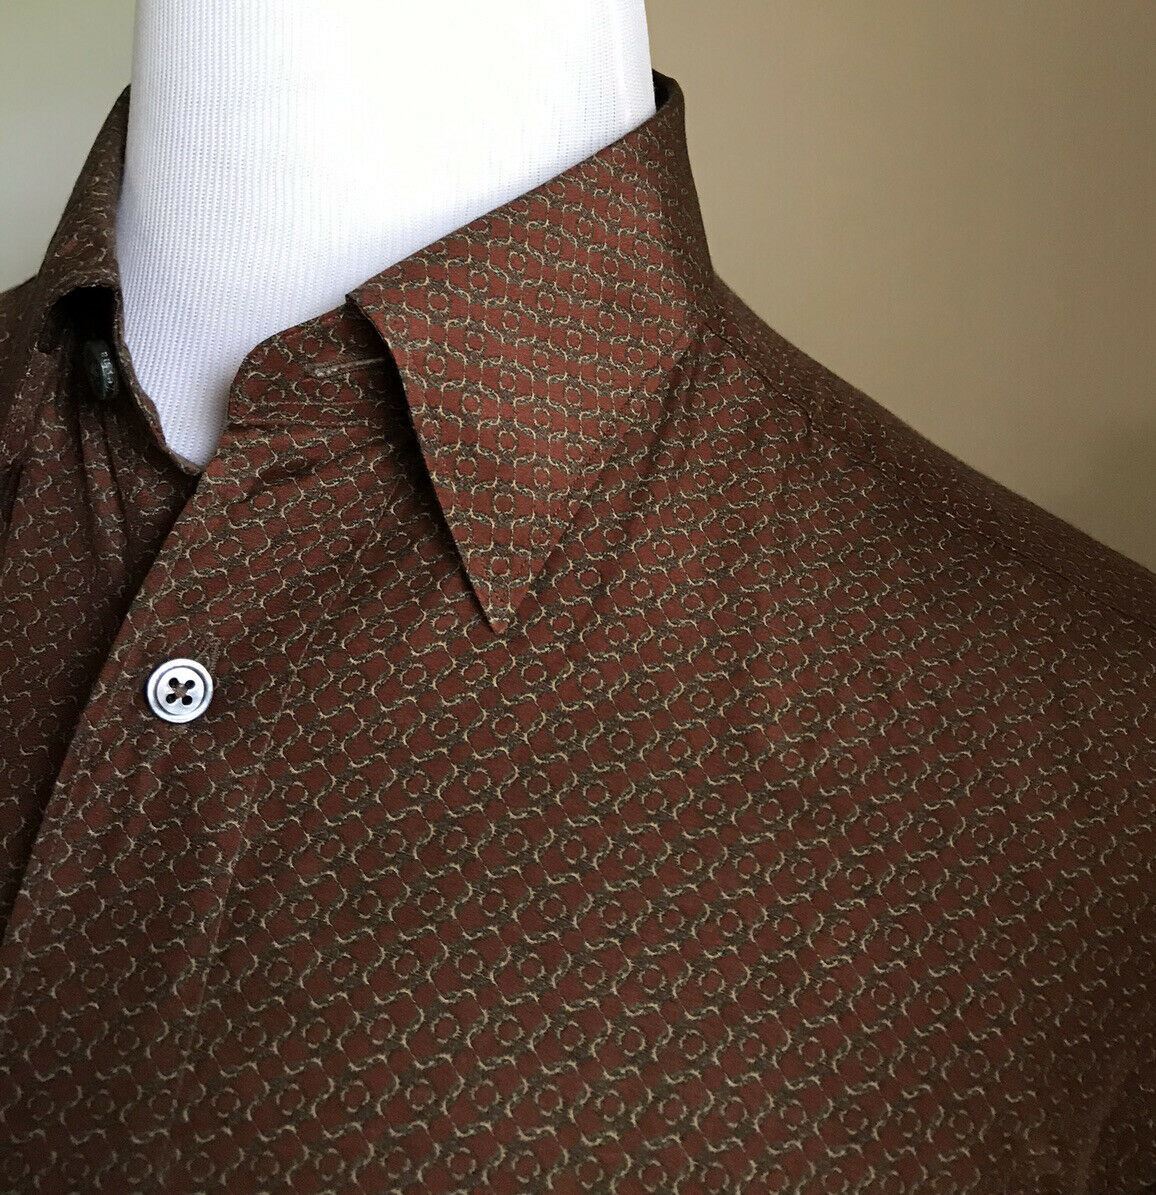 Новая коричневая рубашка с коротким рукавом Ermenegildo Zegna за 495 долларов, размер L